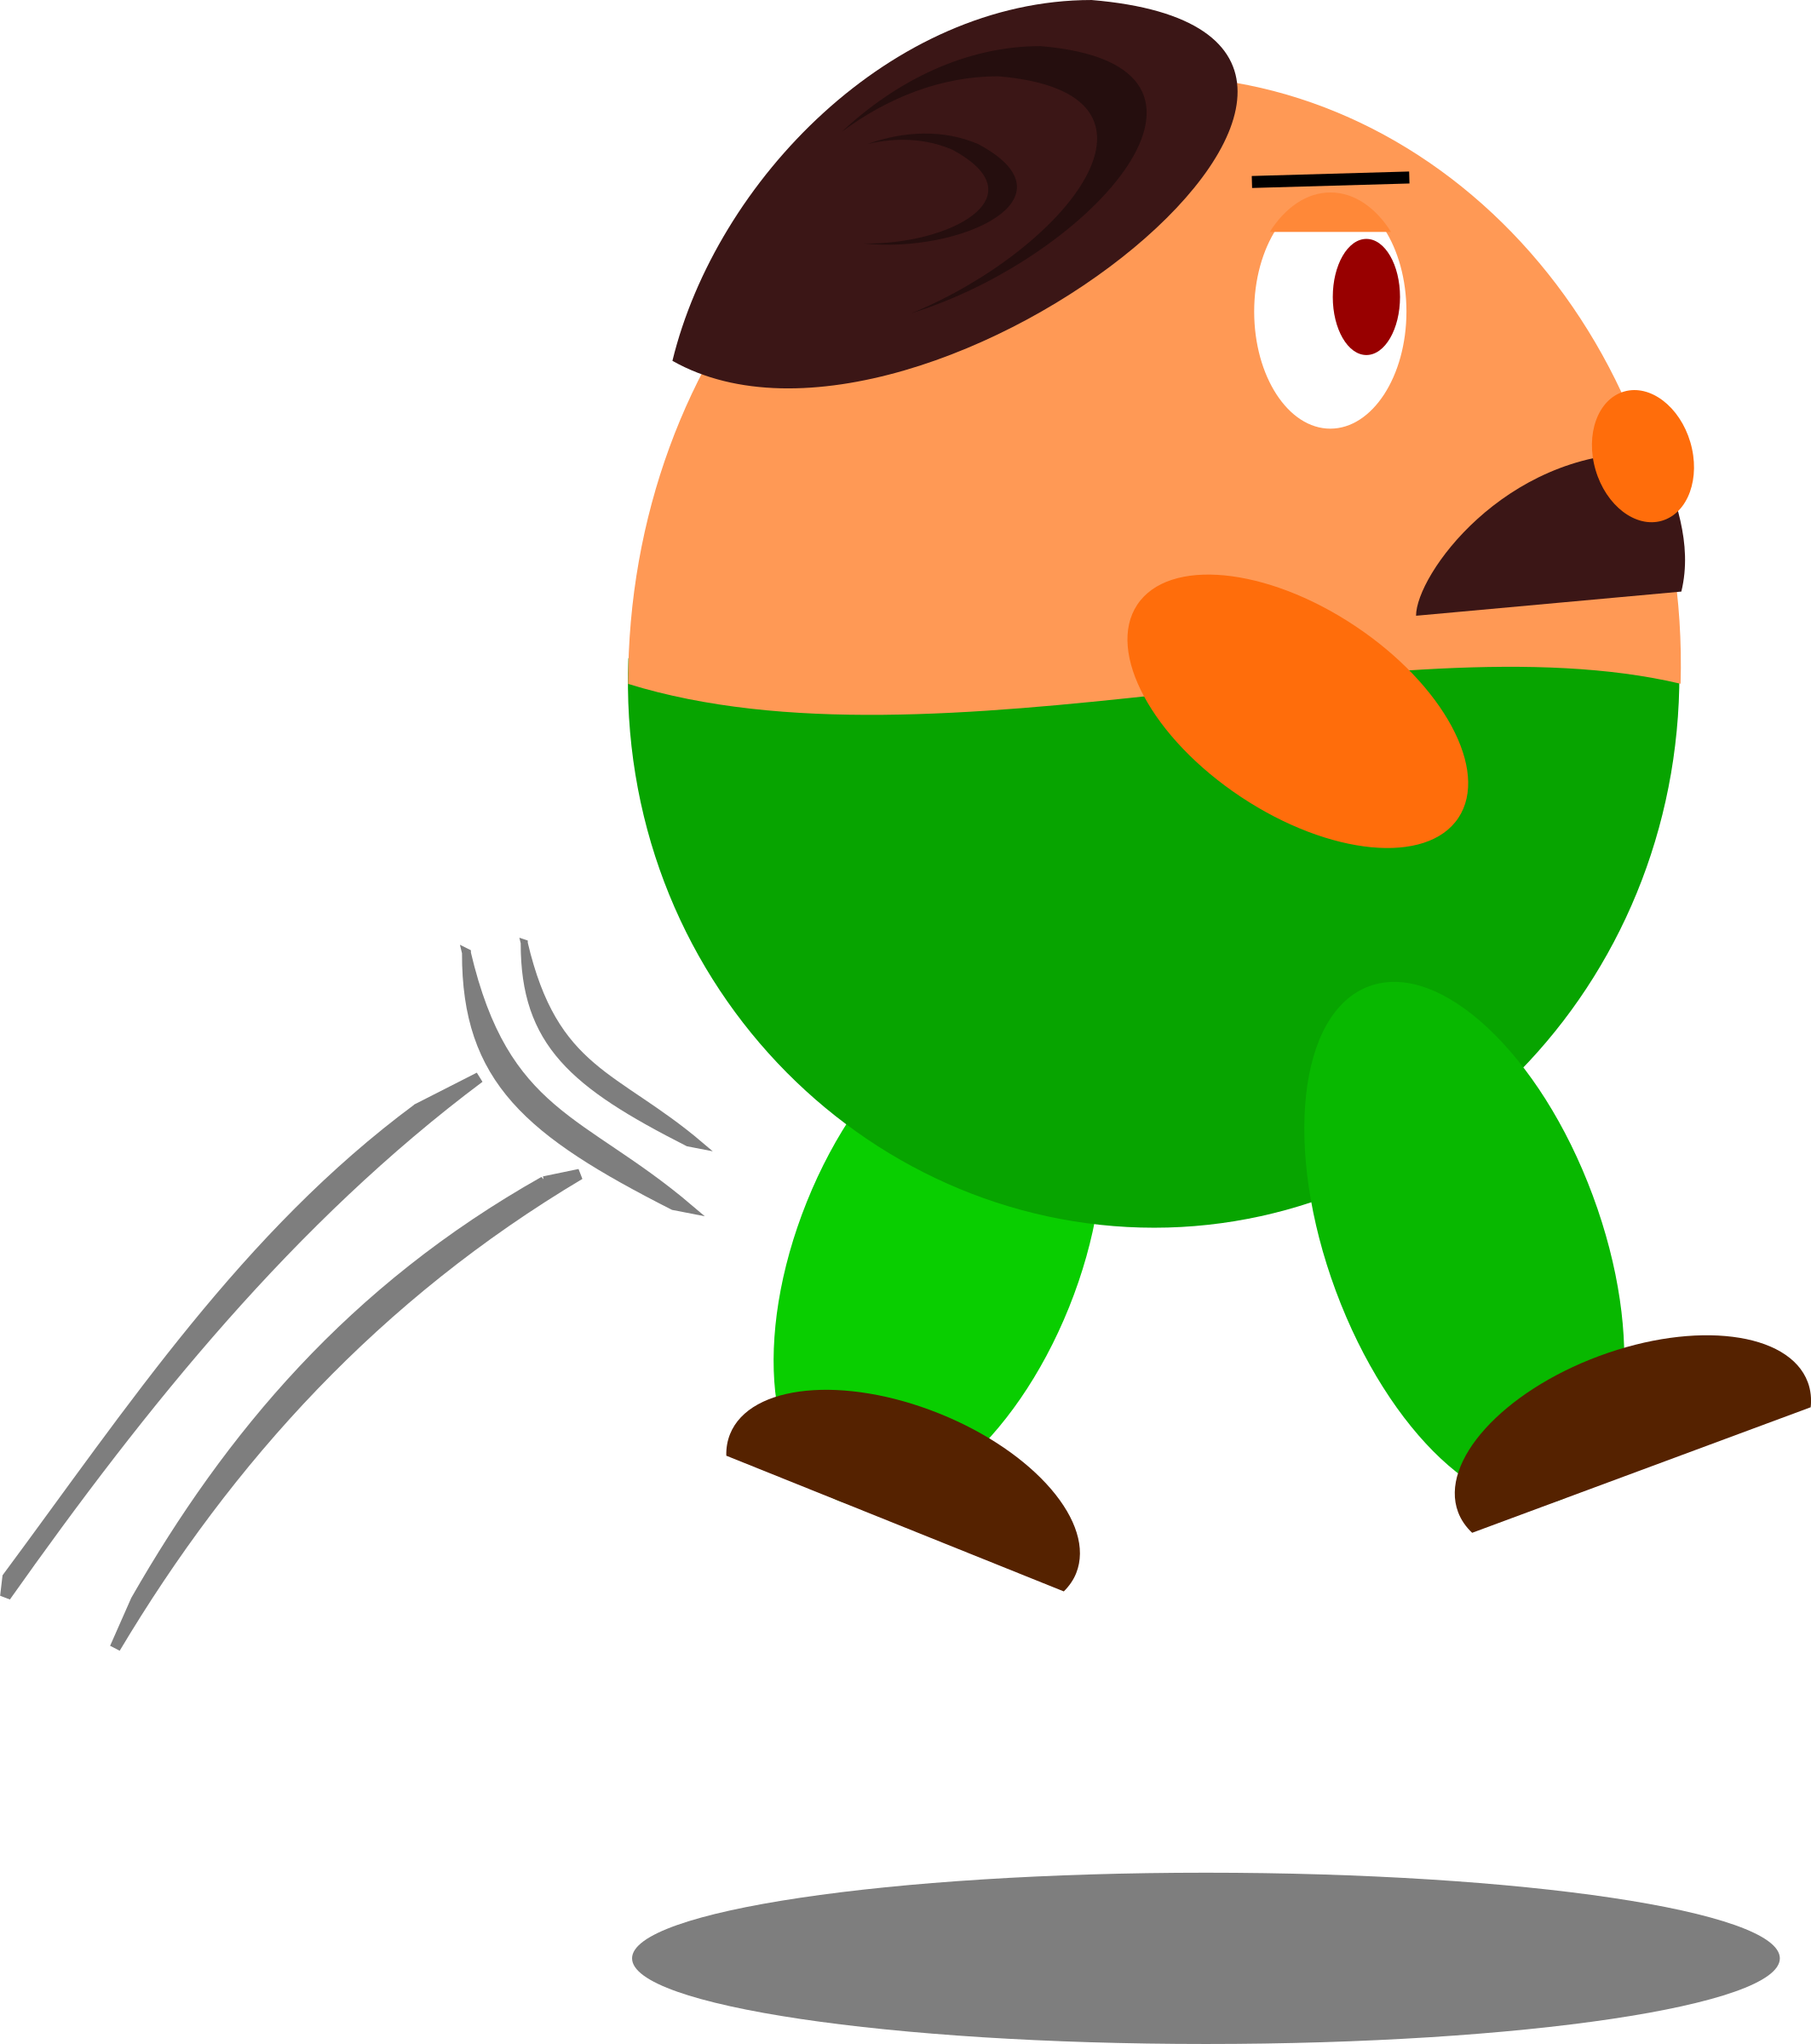 Jumping clipart cartoon character. Green pants guy big